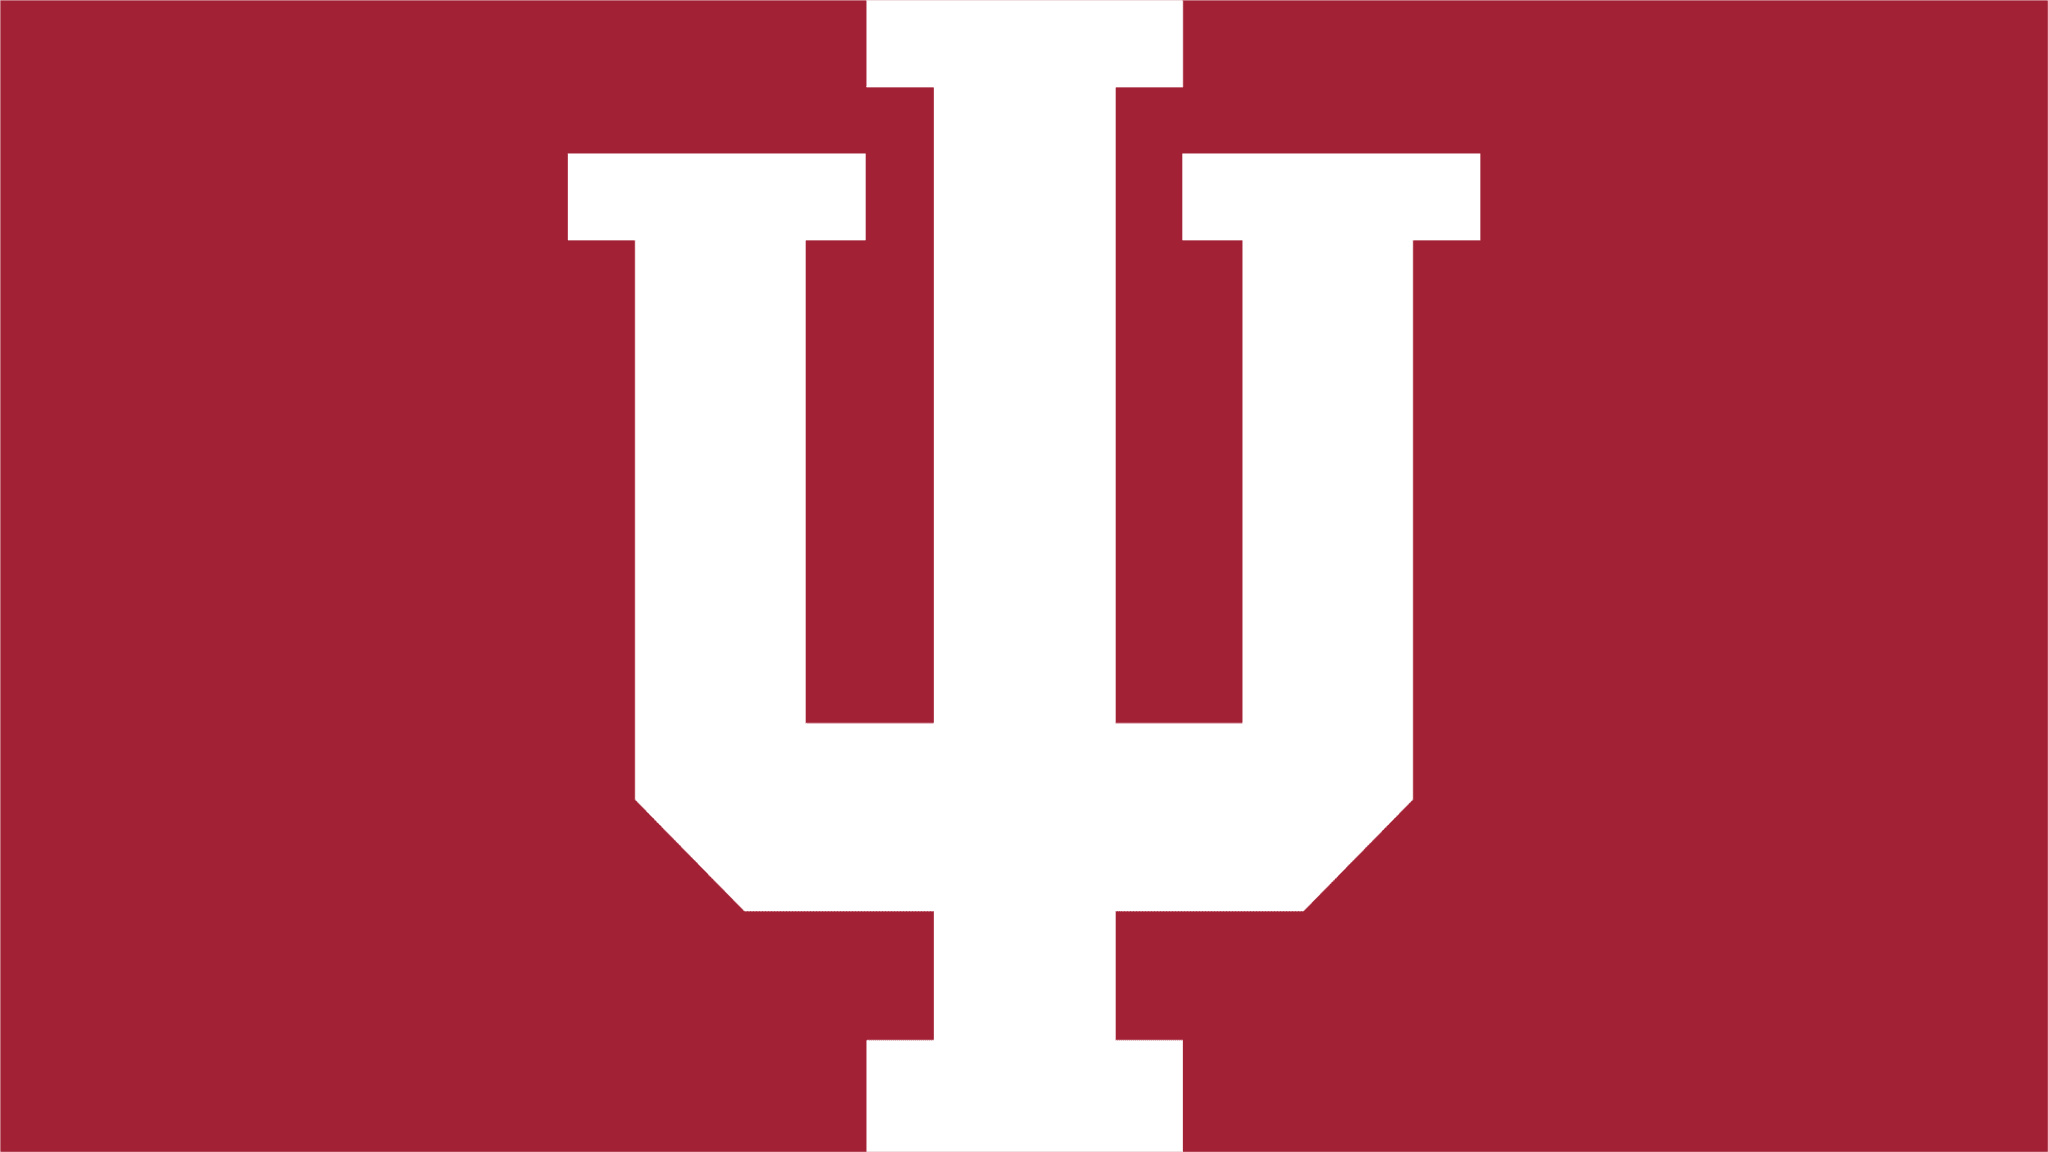 Indiana University, Hoosiers pride, University branding, Trademark logo, 2050x1160 HD Desktop